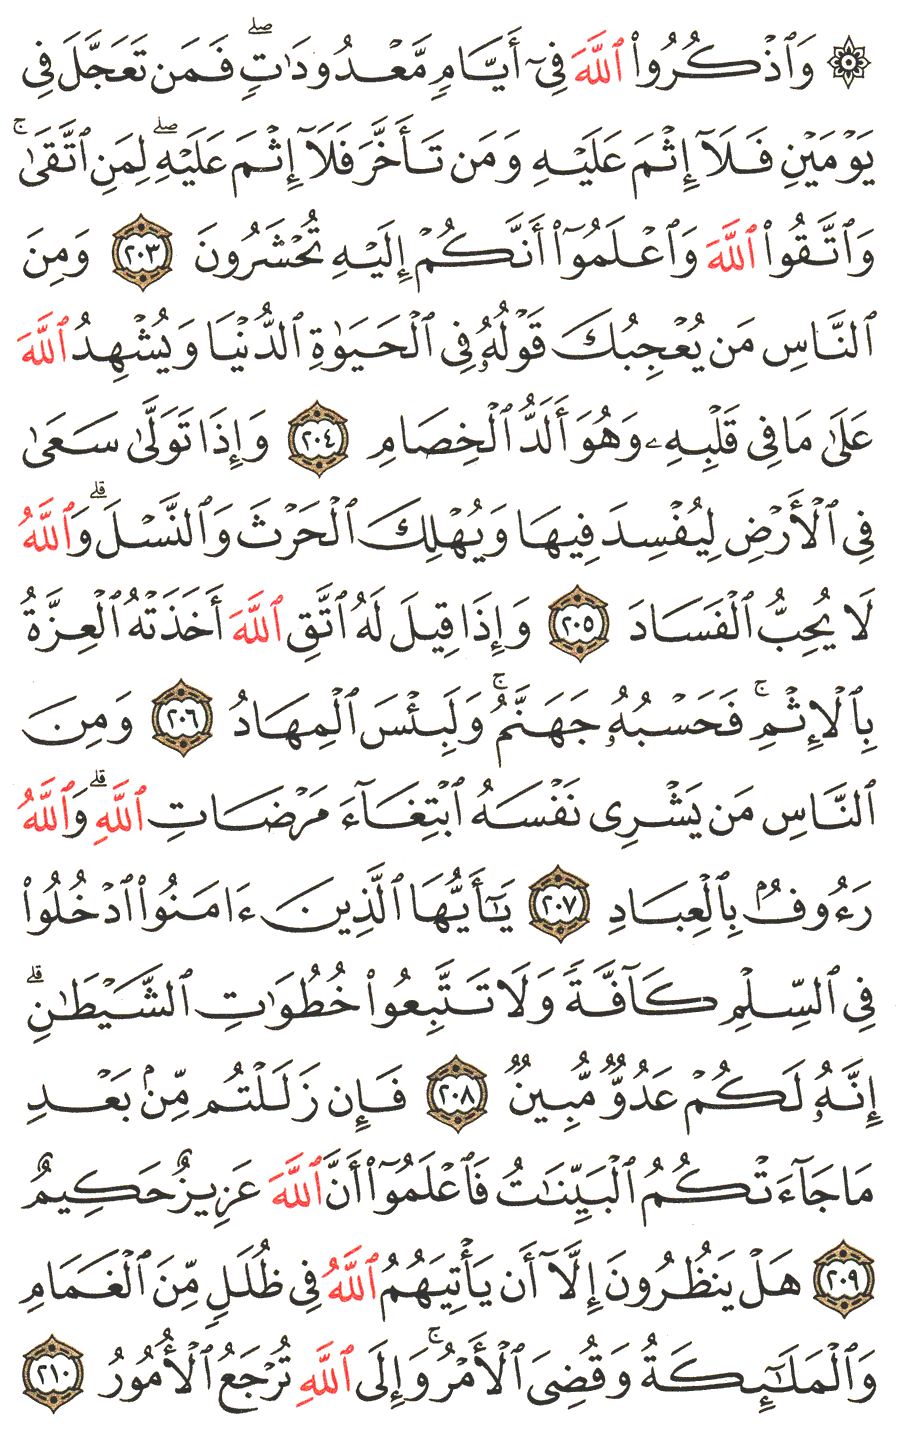 الصفحة رقم  32 من القرآن الكريم مكتوبة من المصحف